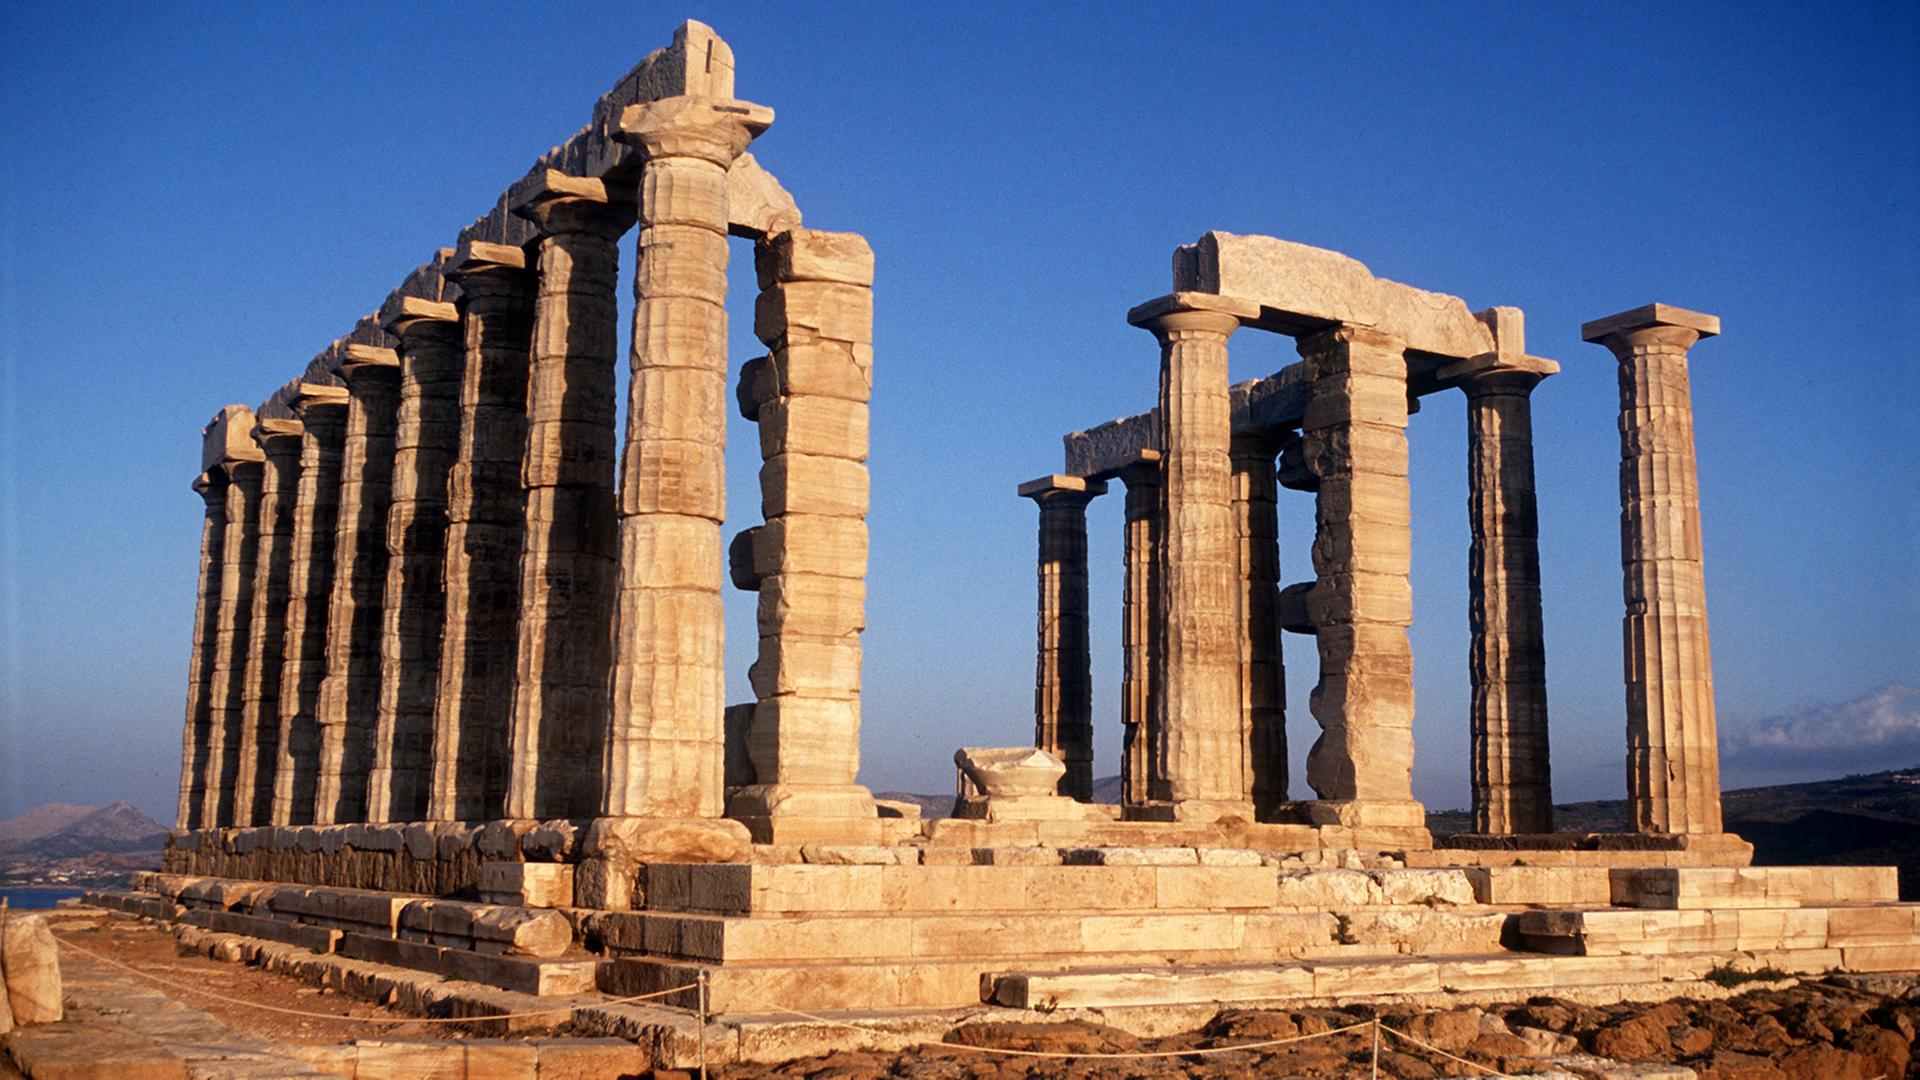 Marodes Bauwerk unter strahlend blauem Himmel: Blick auf die Ruine des Tempels des Poseidon am Kap Sounion